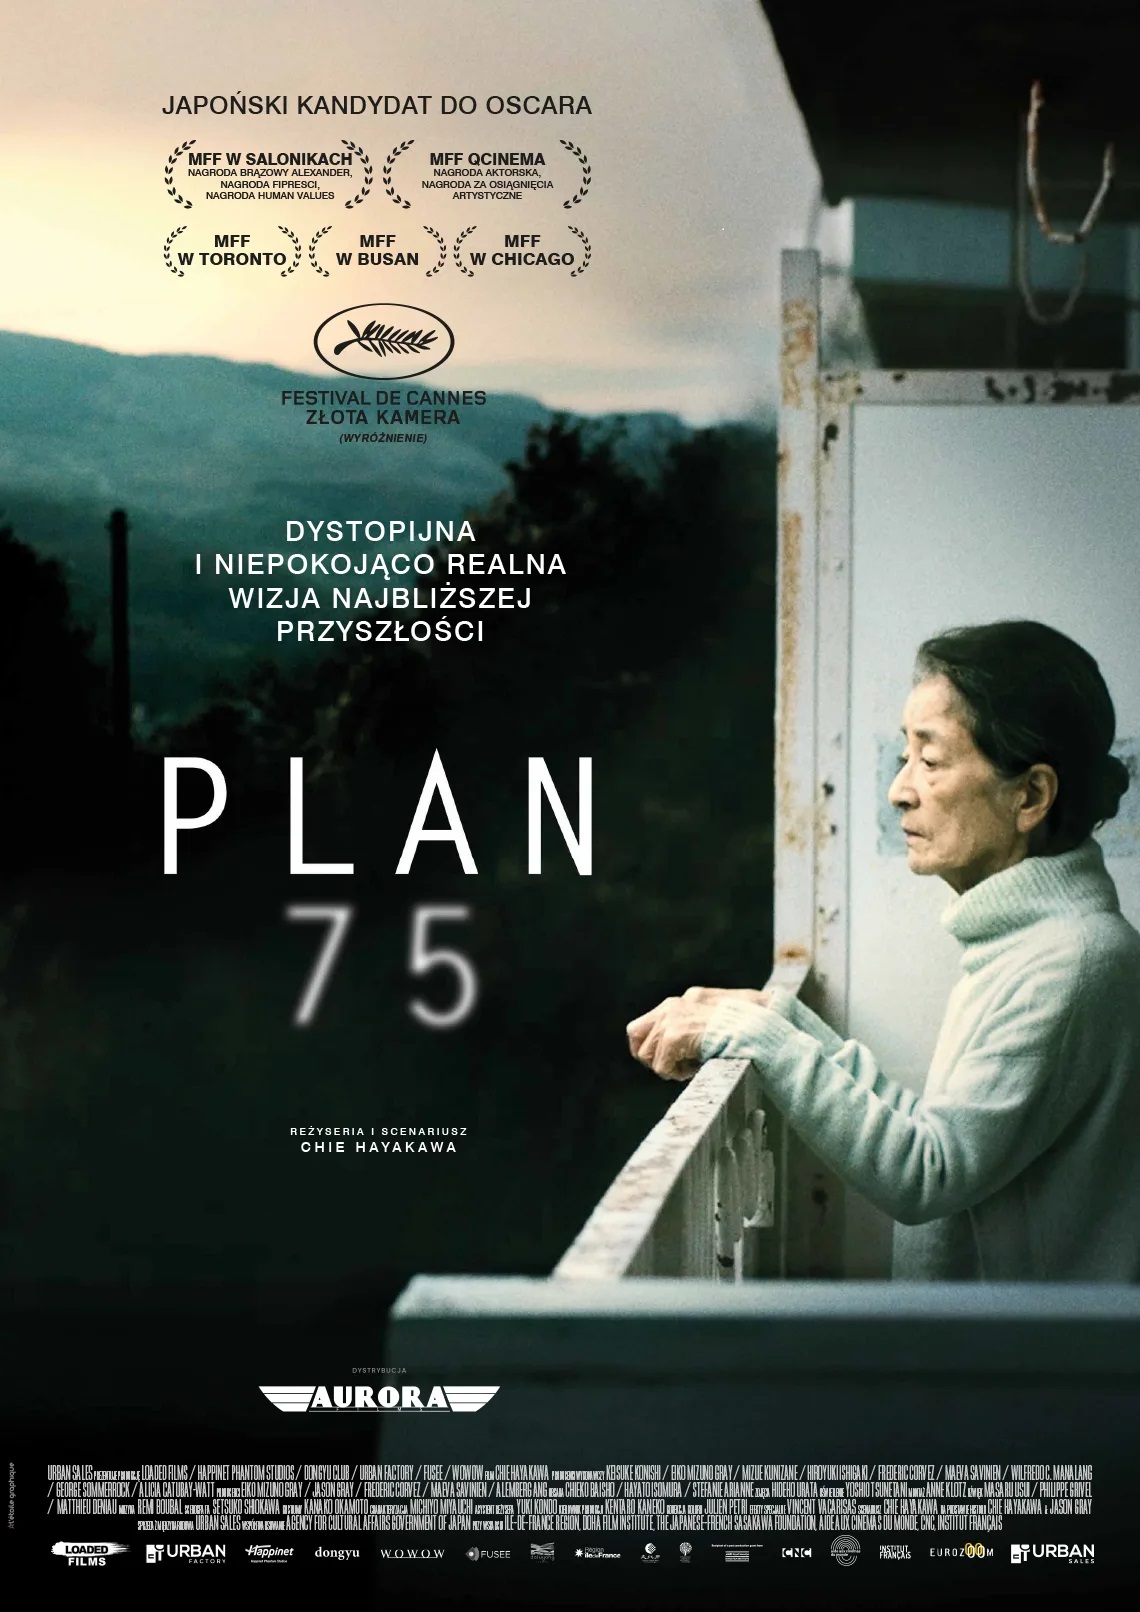 starsza kobieta - Azjatka, stoi na balkonie i spogląda przed siebie, w tle góry, napis: Plan 75, dystopijna niepokojąco realna wizja najbliższej przyszłości